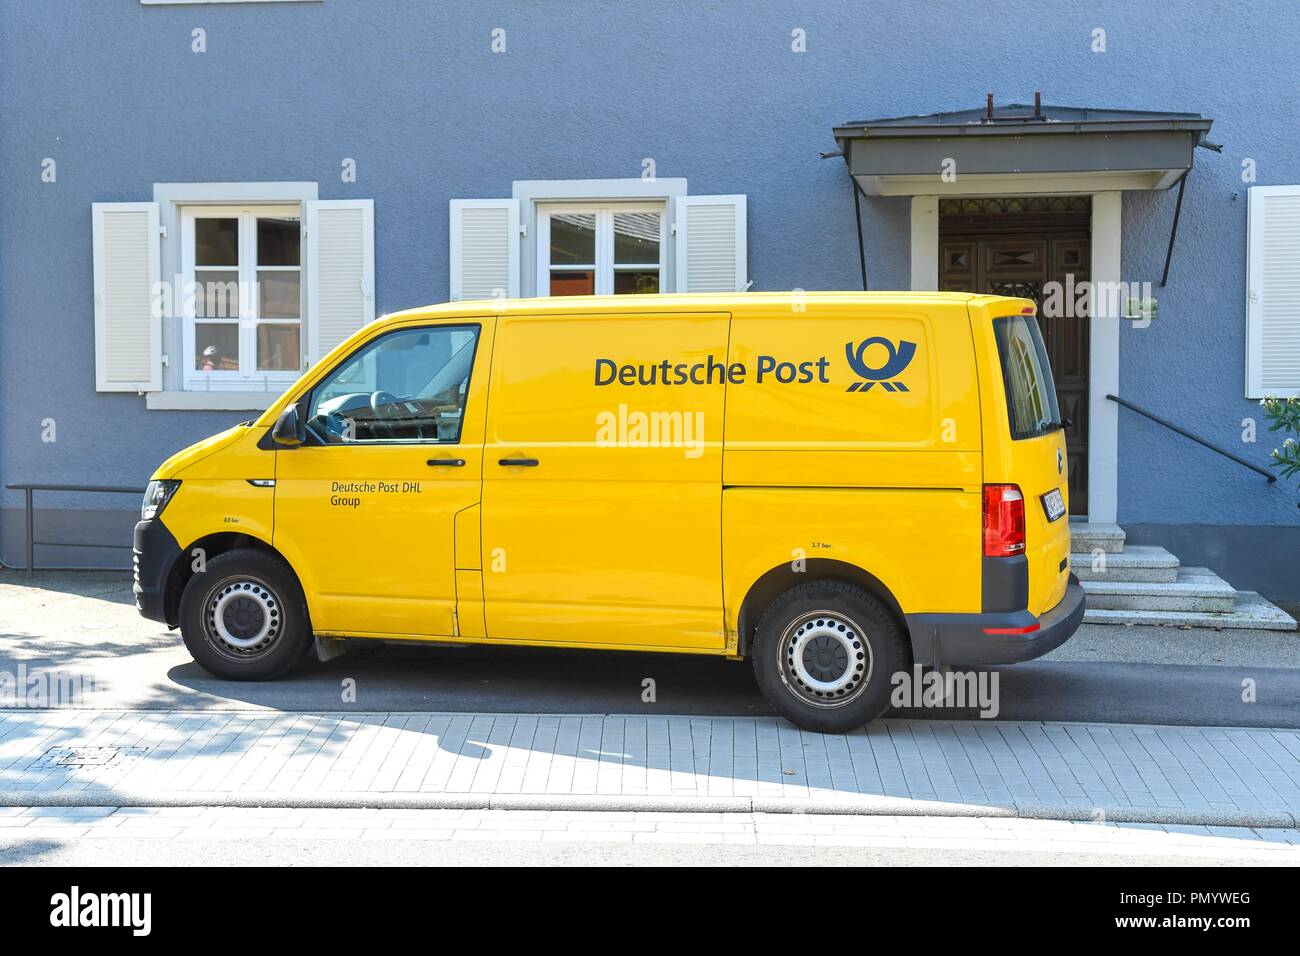 Deutsche Post van, Allemagne Banque D'Images